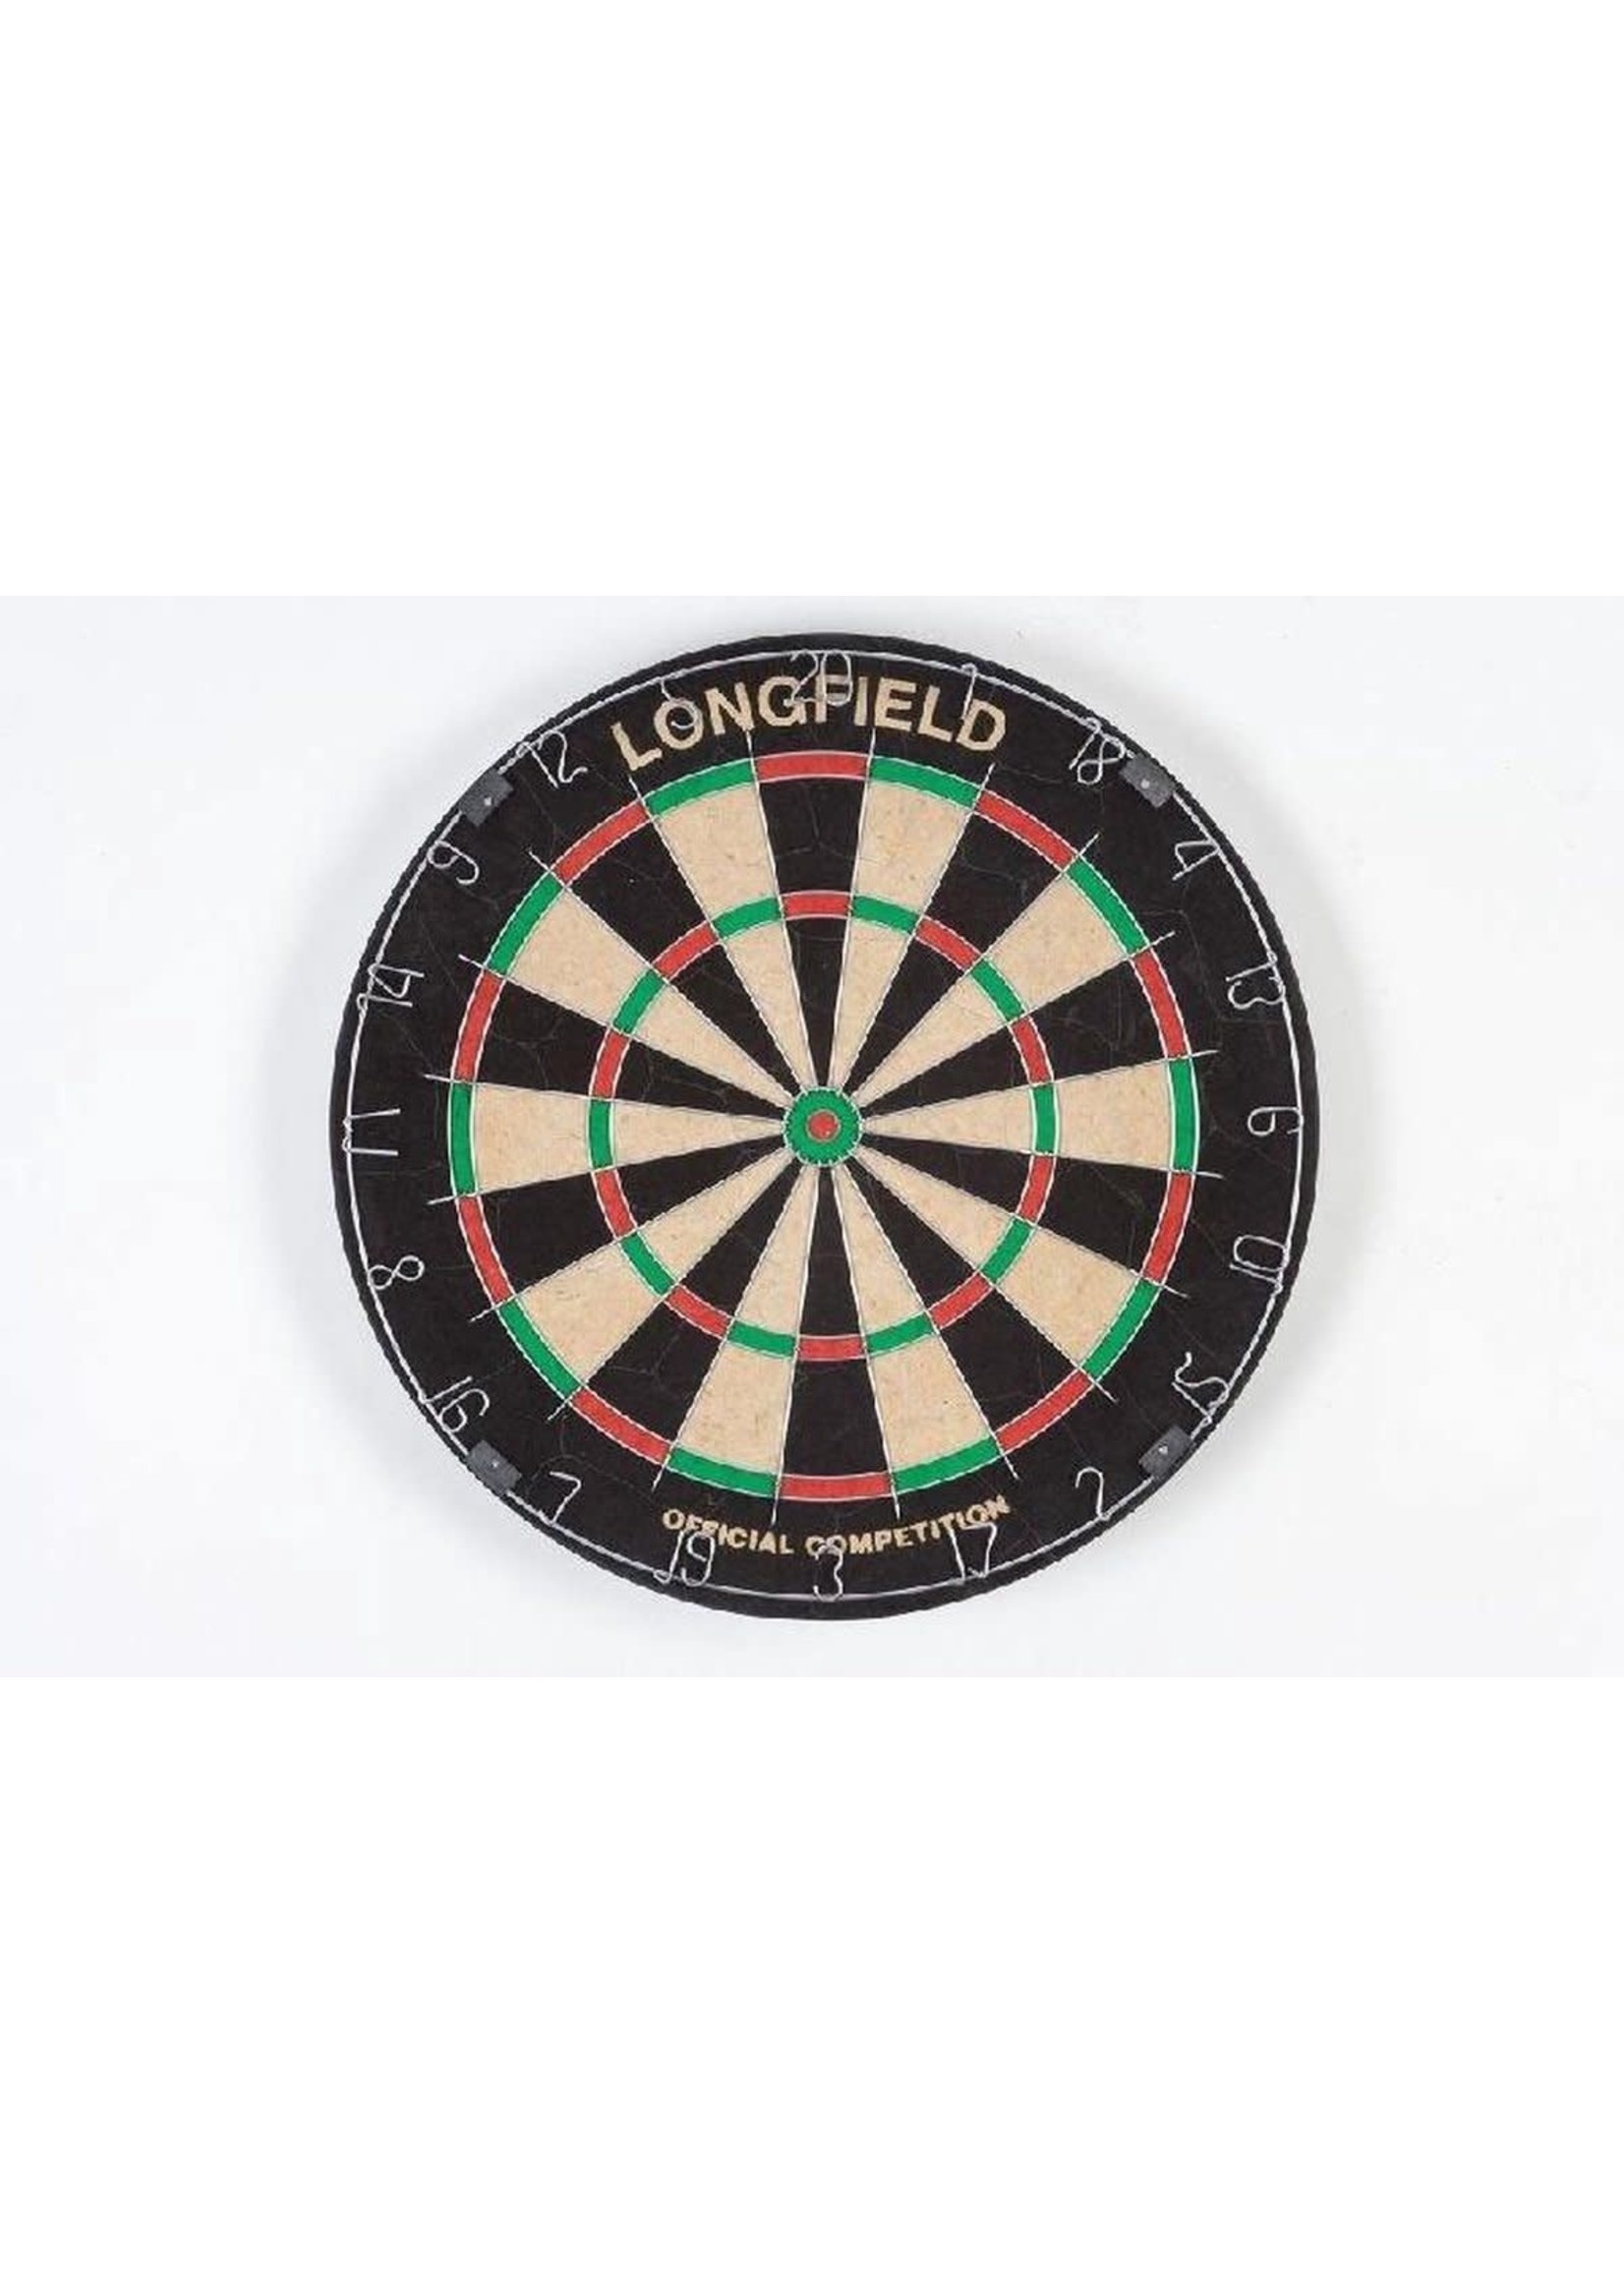 Longfield Dartbord PRO 501 – Chinese Sisal